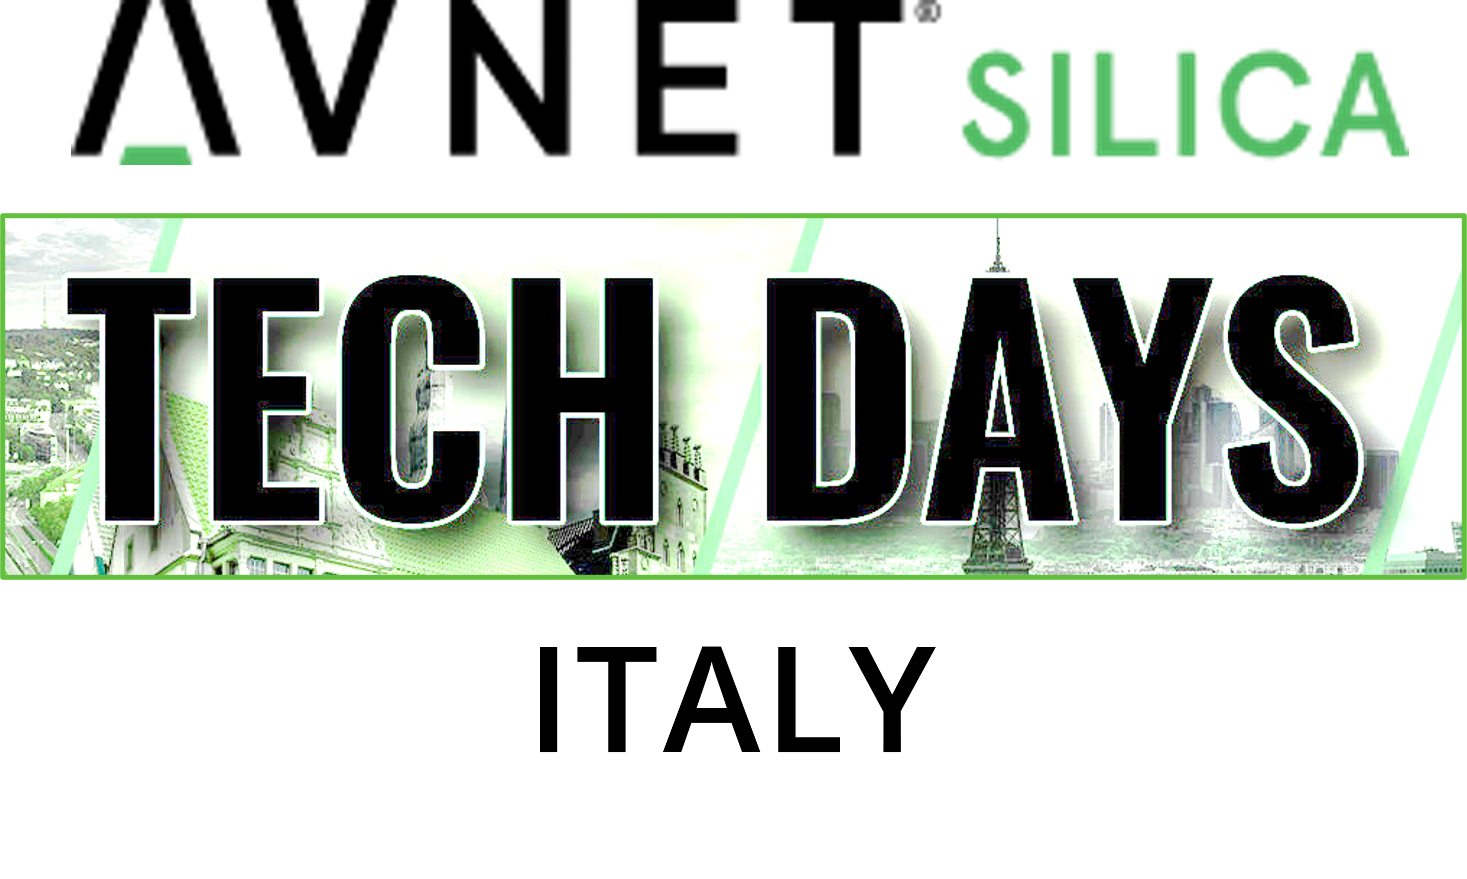 Avnet Silica Tech Day Italy